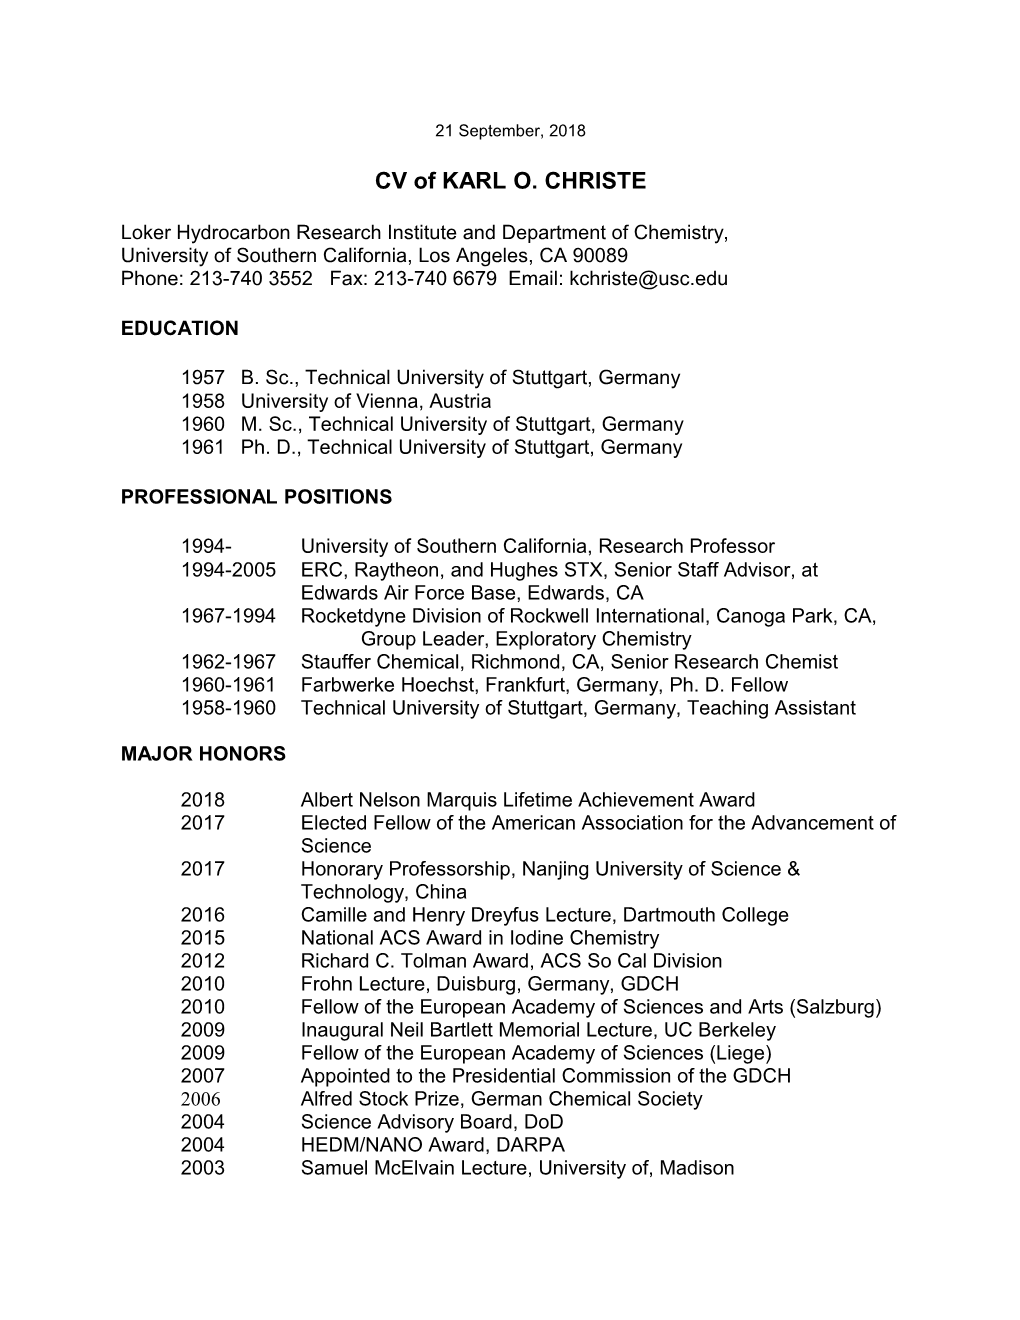 CV of KARL O. CHRISTE